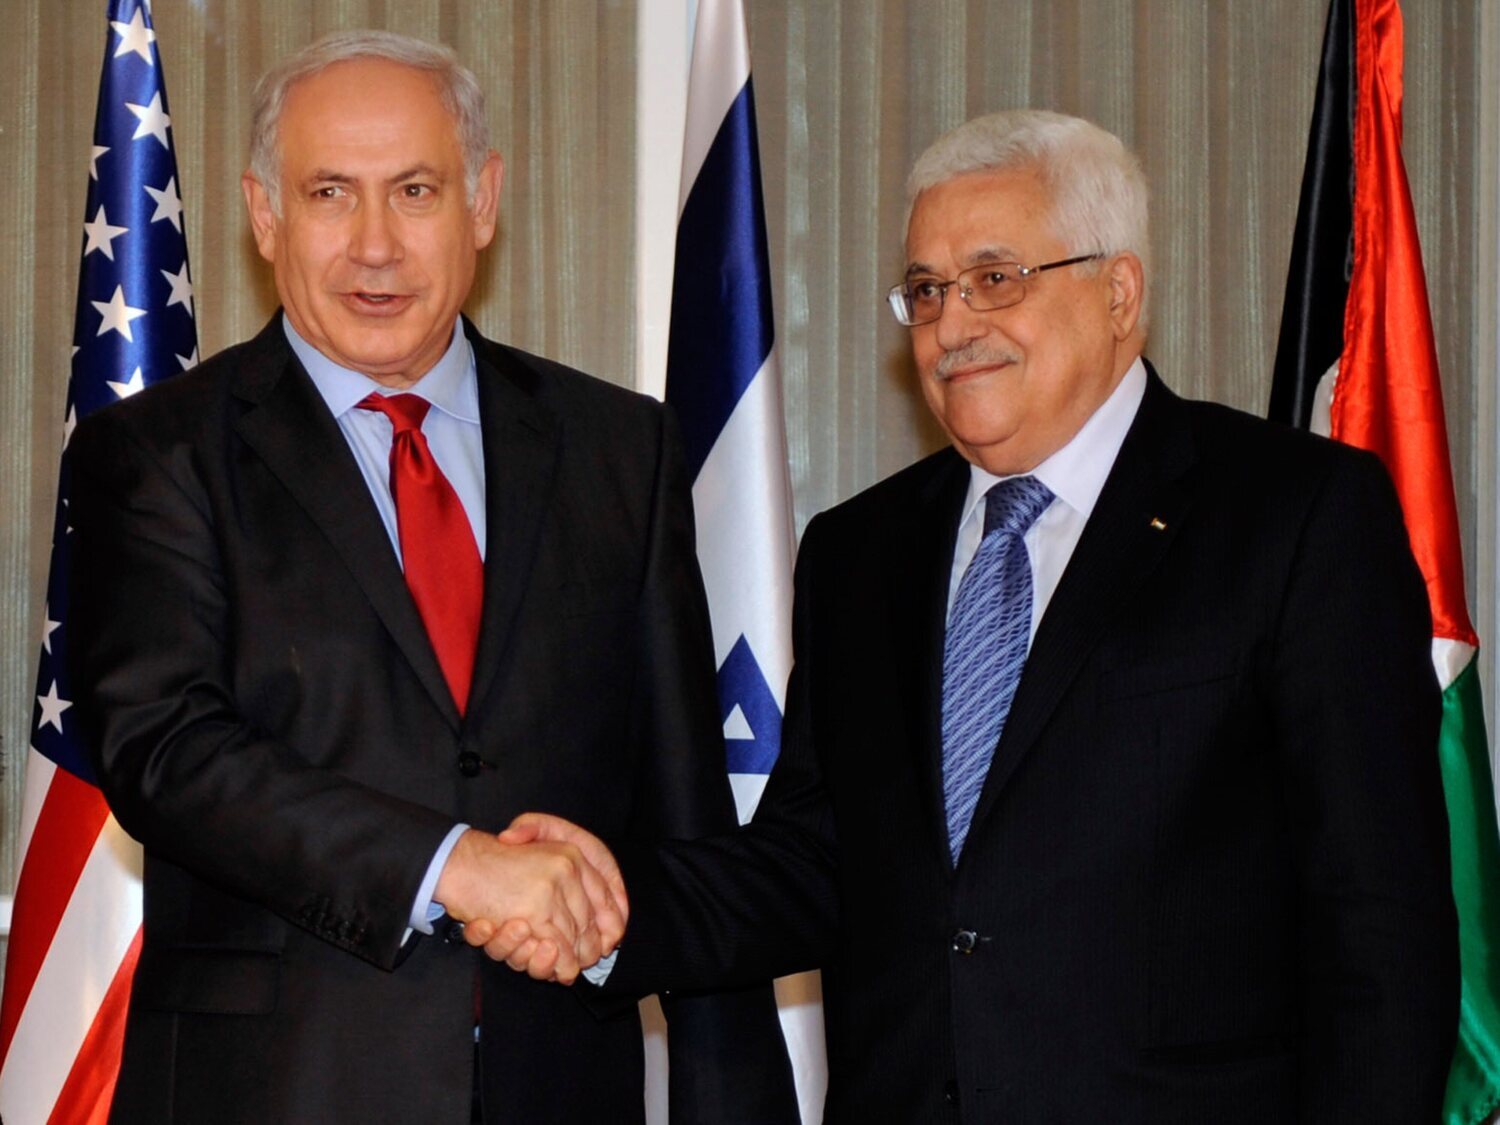 ¿Qué solución ofrece la salida de los dos estados en el conflicto palestino-israelí? ¿Tiene viabilidad? ¿Existen alternativas?